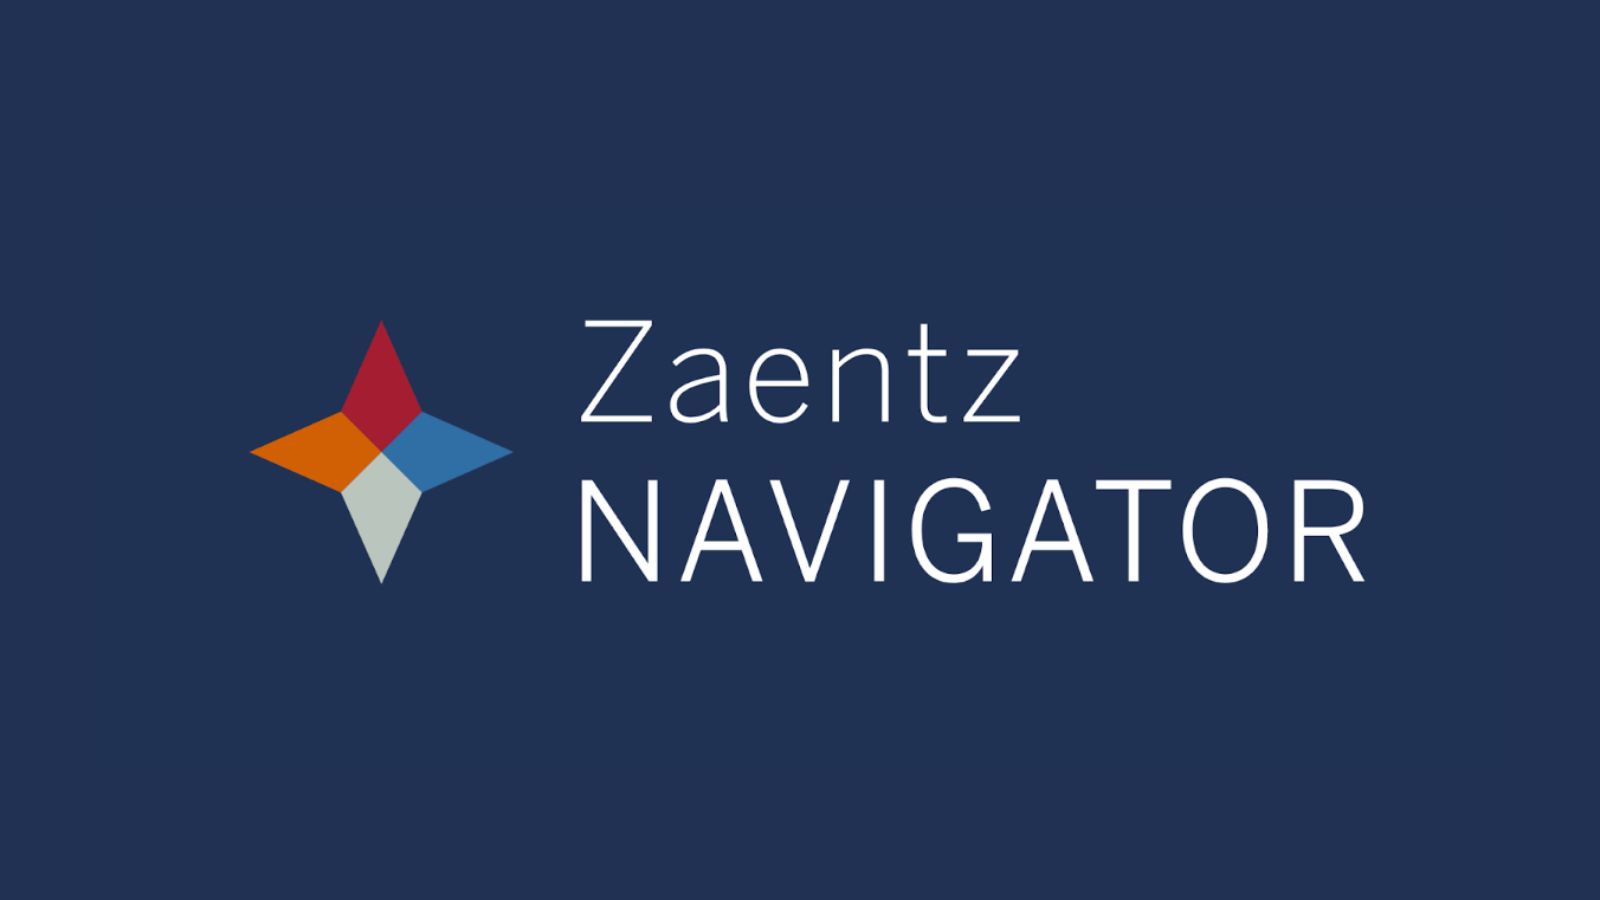 light text on dark background reads Zaentz Navigator.